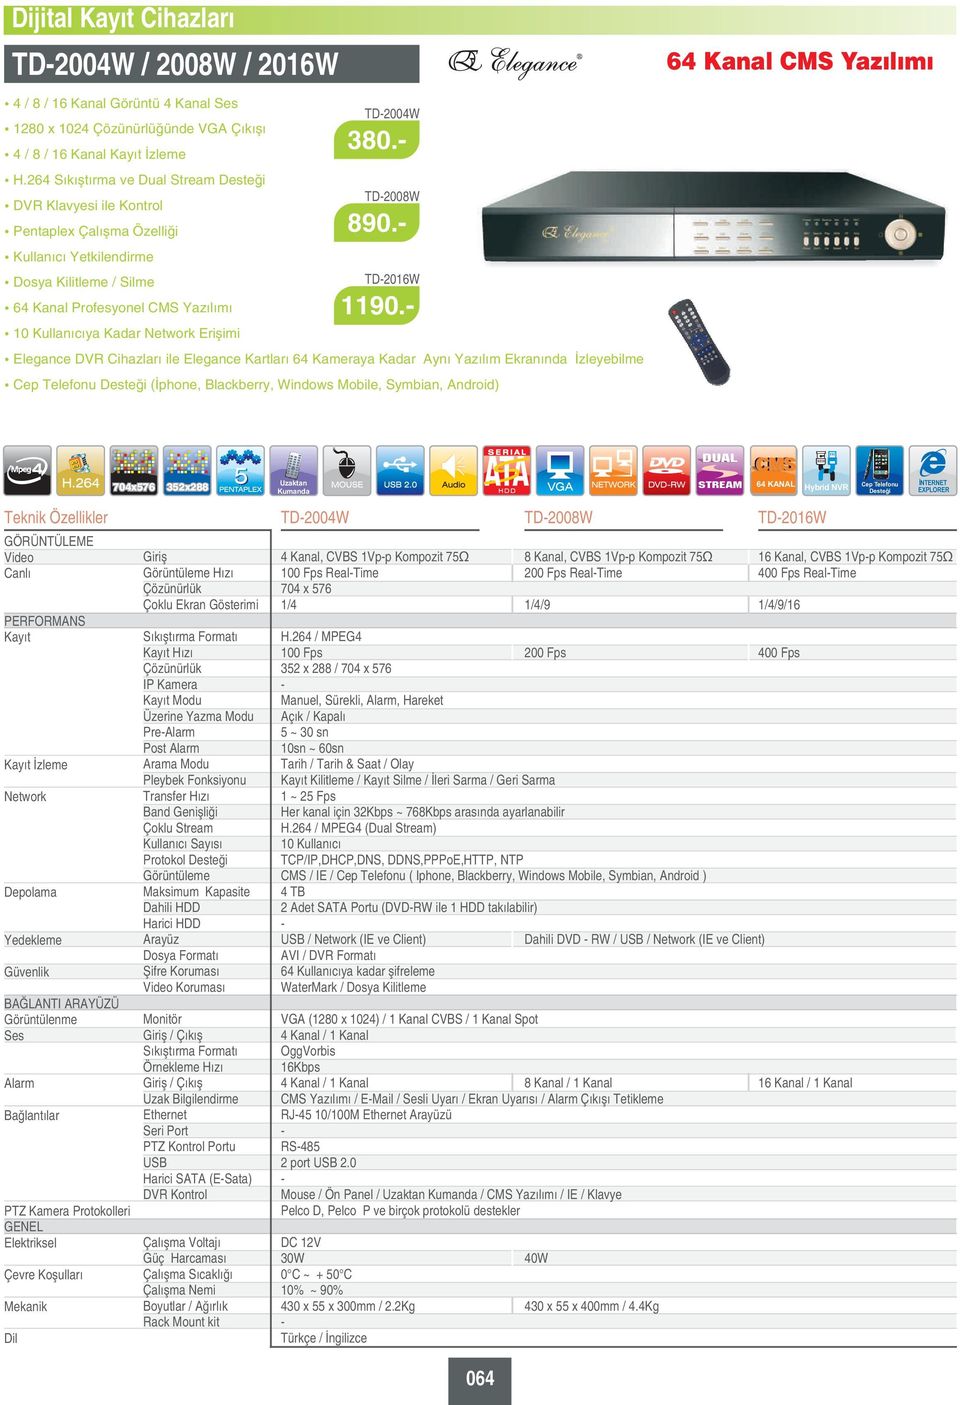 Elegance DVR Cihazları ile Elegance Kartları 64 Kameraya Kadar Aynı Ekranında İzleyebilme (İphone, Blackberry, Windows Mobile, Symbian, Android) 64 Kanal ı İzleme Görüntülenme 704x576 352x288 Hızı IP